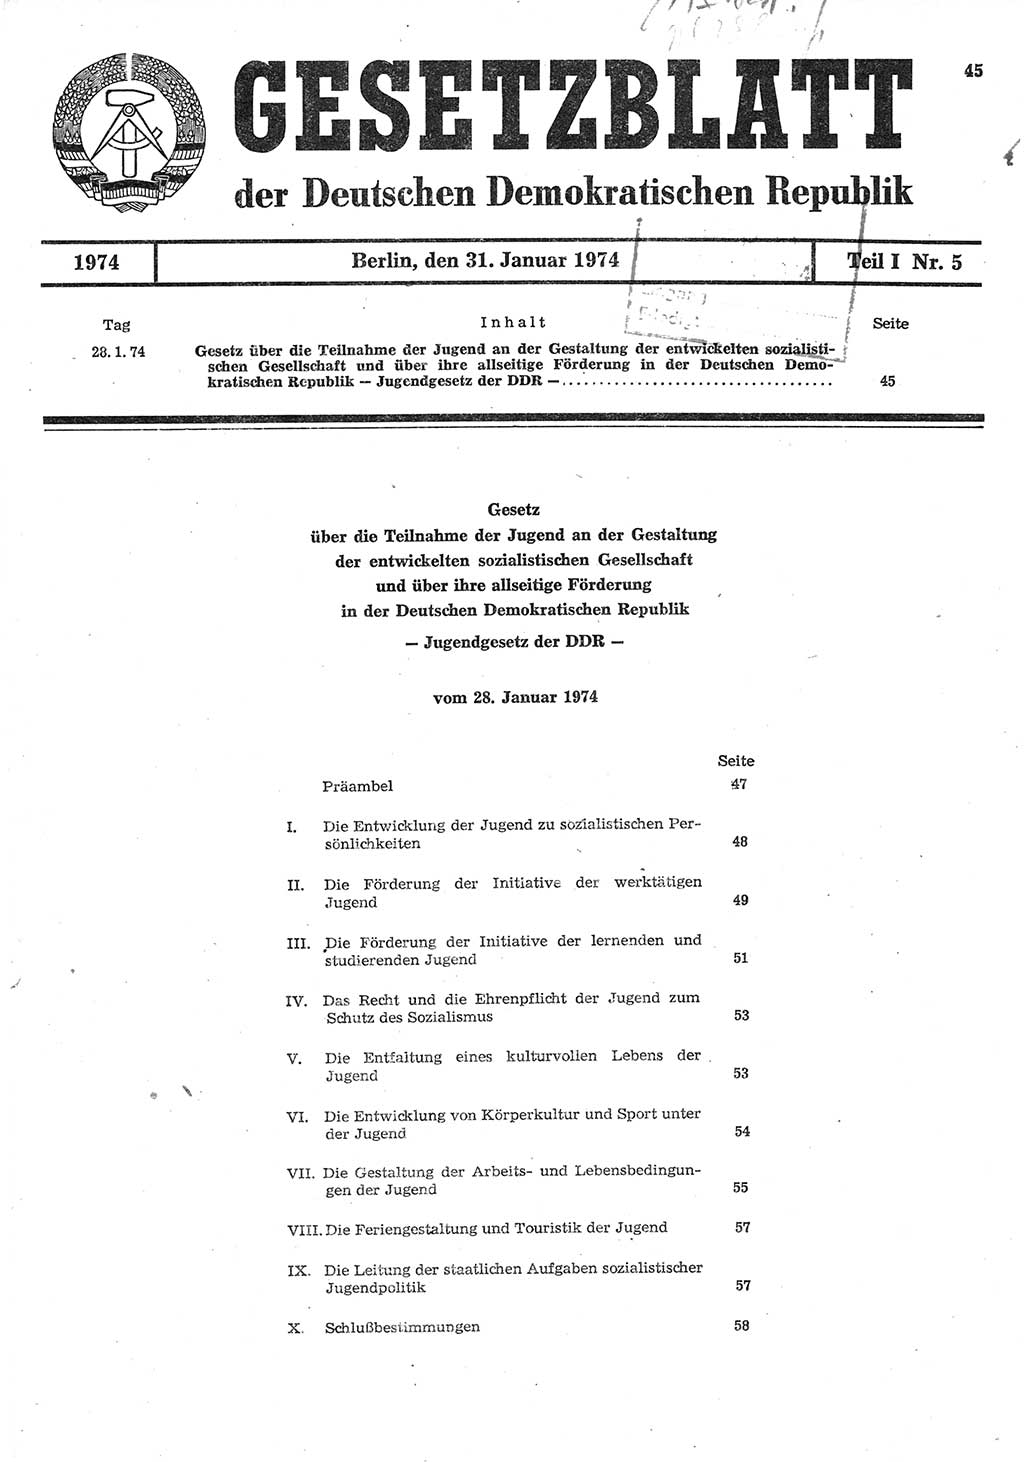 Gesetzblatt (GBl.) der Deutschen Demokratischen Republik (DDR) Teil Ⅰ 1974, Seite 45 (GBl. DDR Ⅰ 1974, S. 45)